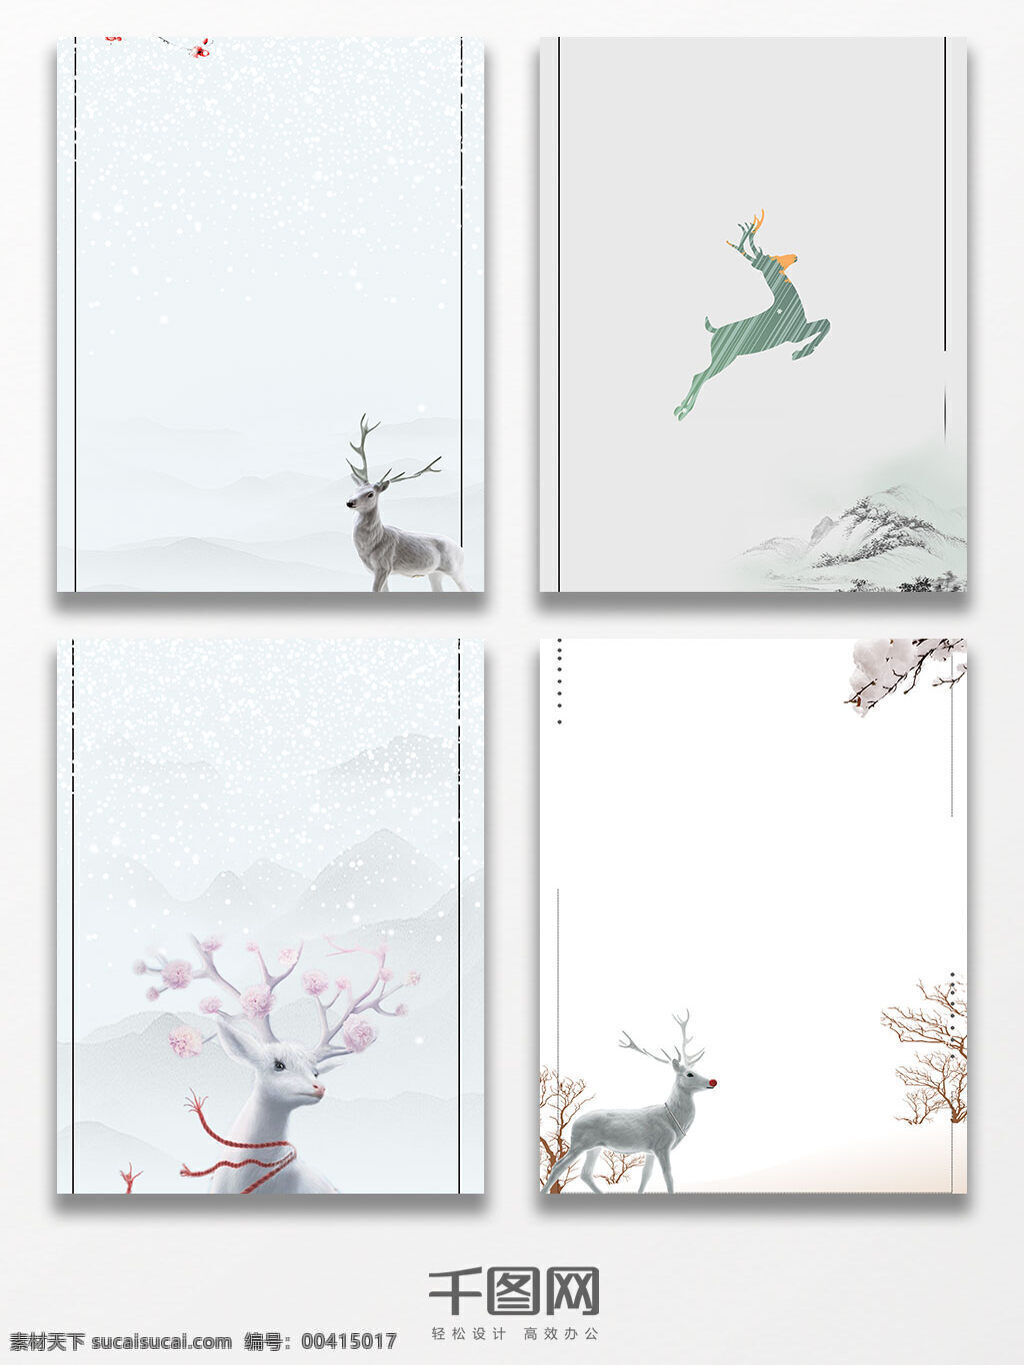 文艺 清新 简约 圣诞节 麋鹿 背景 淡雅 雪天 图 圣诞节背景 白色背景 唯美 冬季